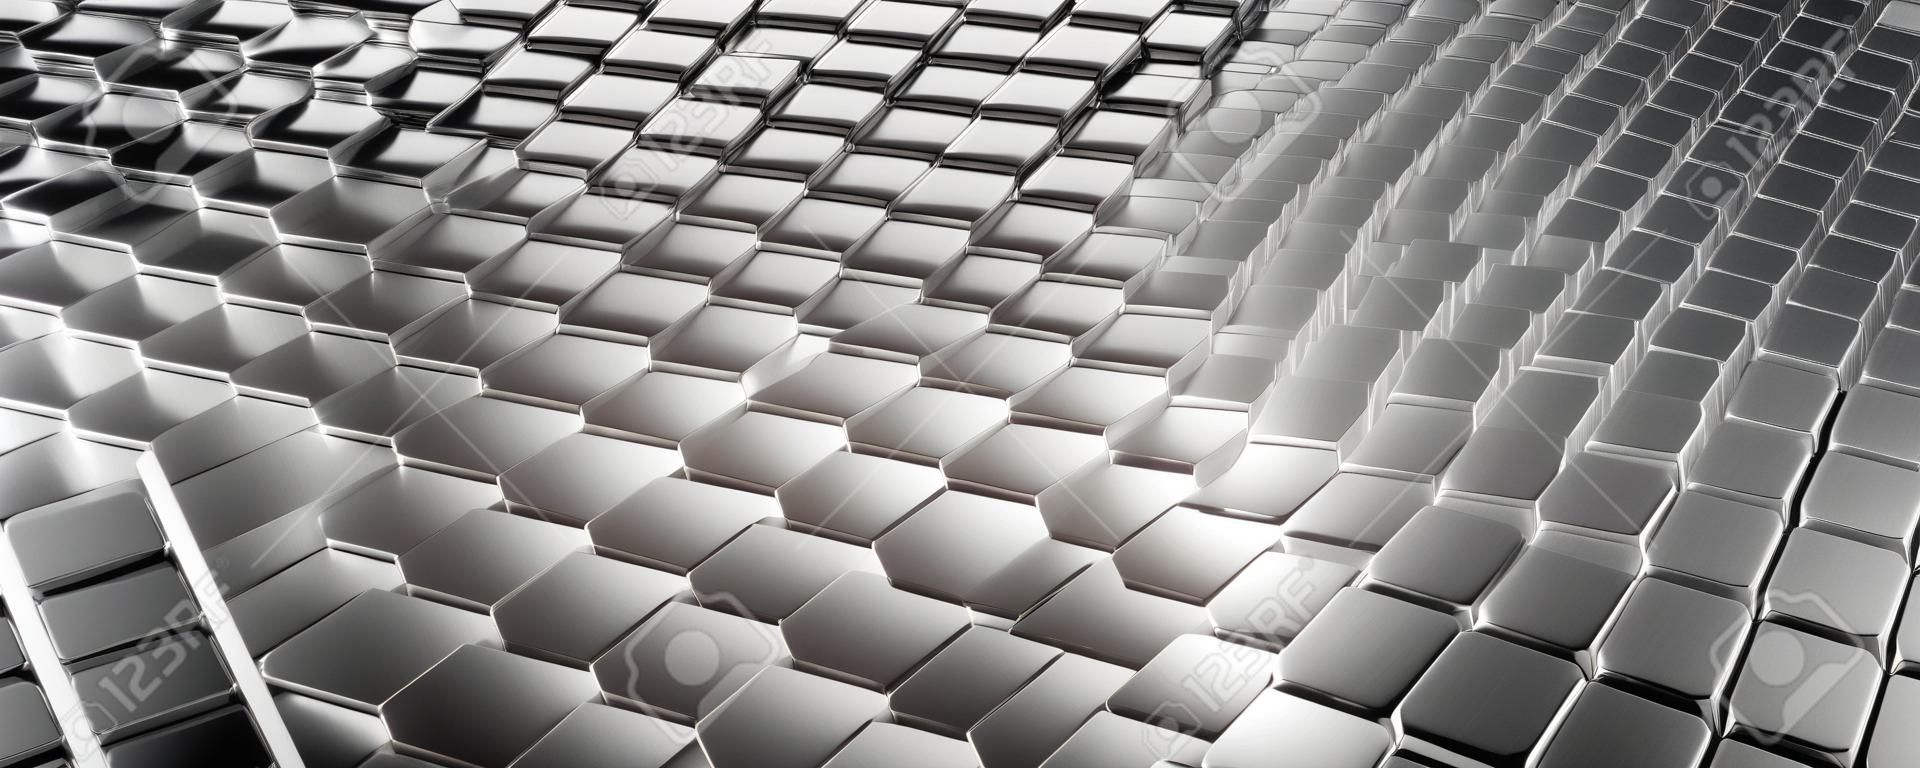 Argent métallique abstrait de motif de cube de surface futuriste avec des rayons lumineux teinte métallique argentée fond hexagonal large bannière illustration 3d